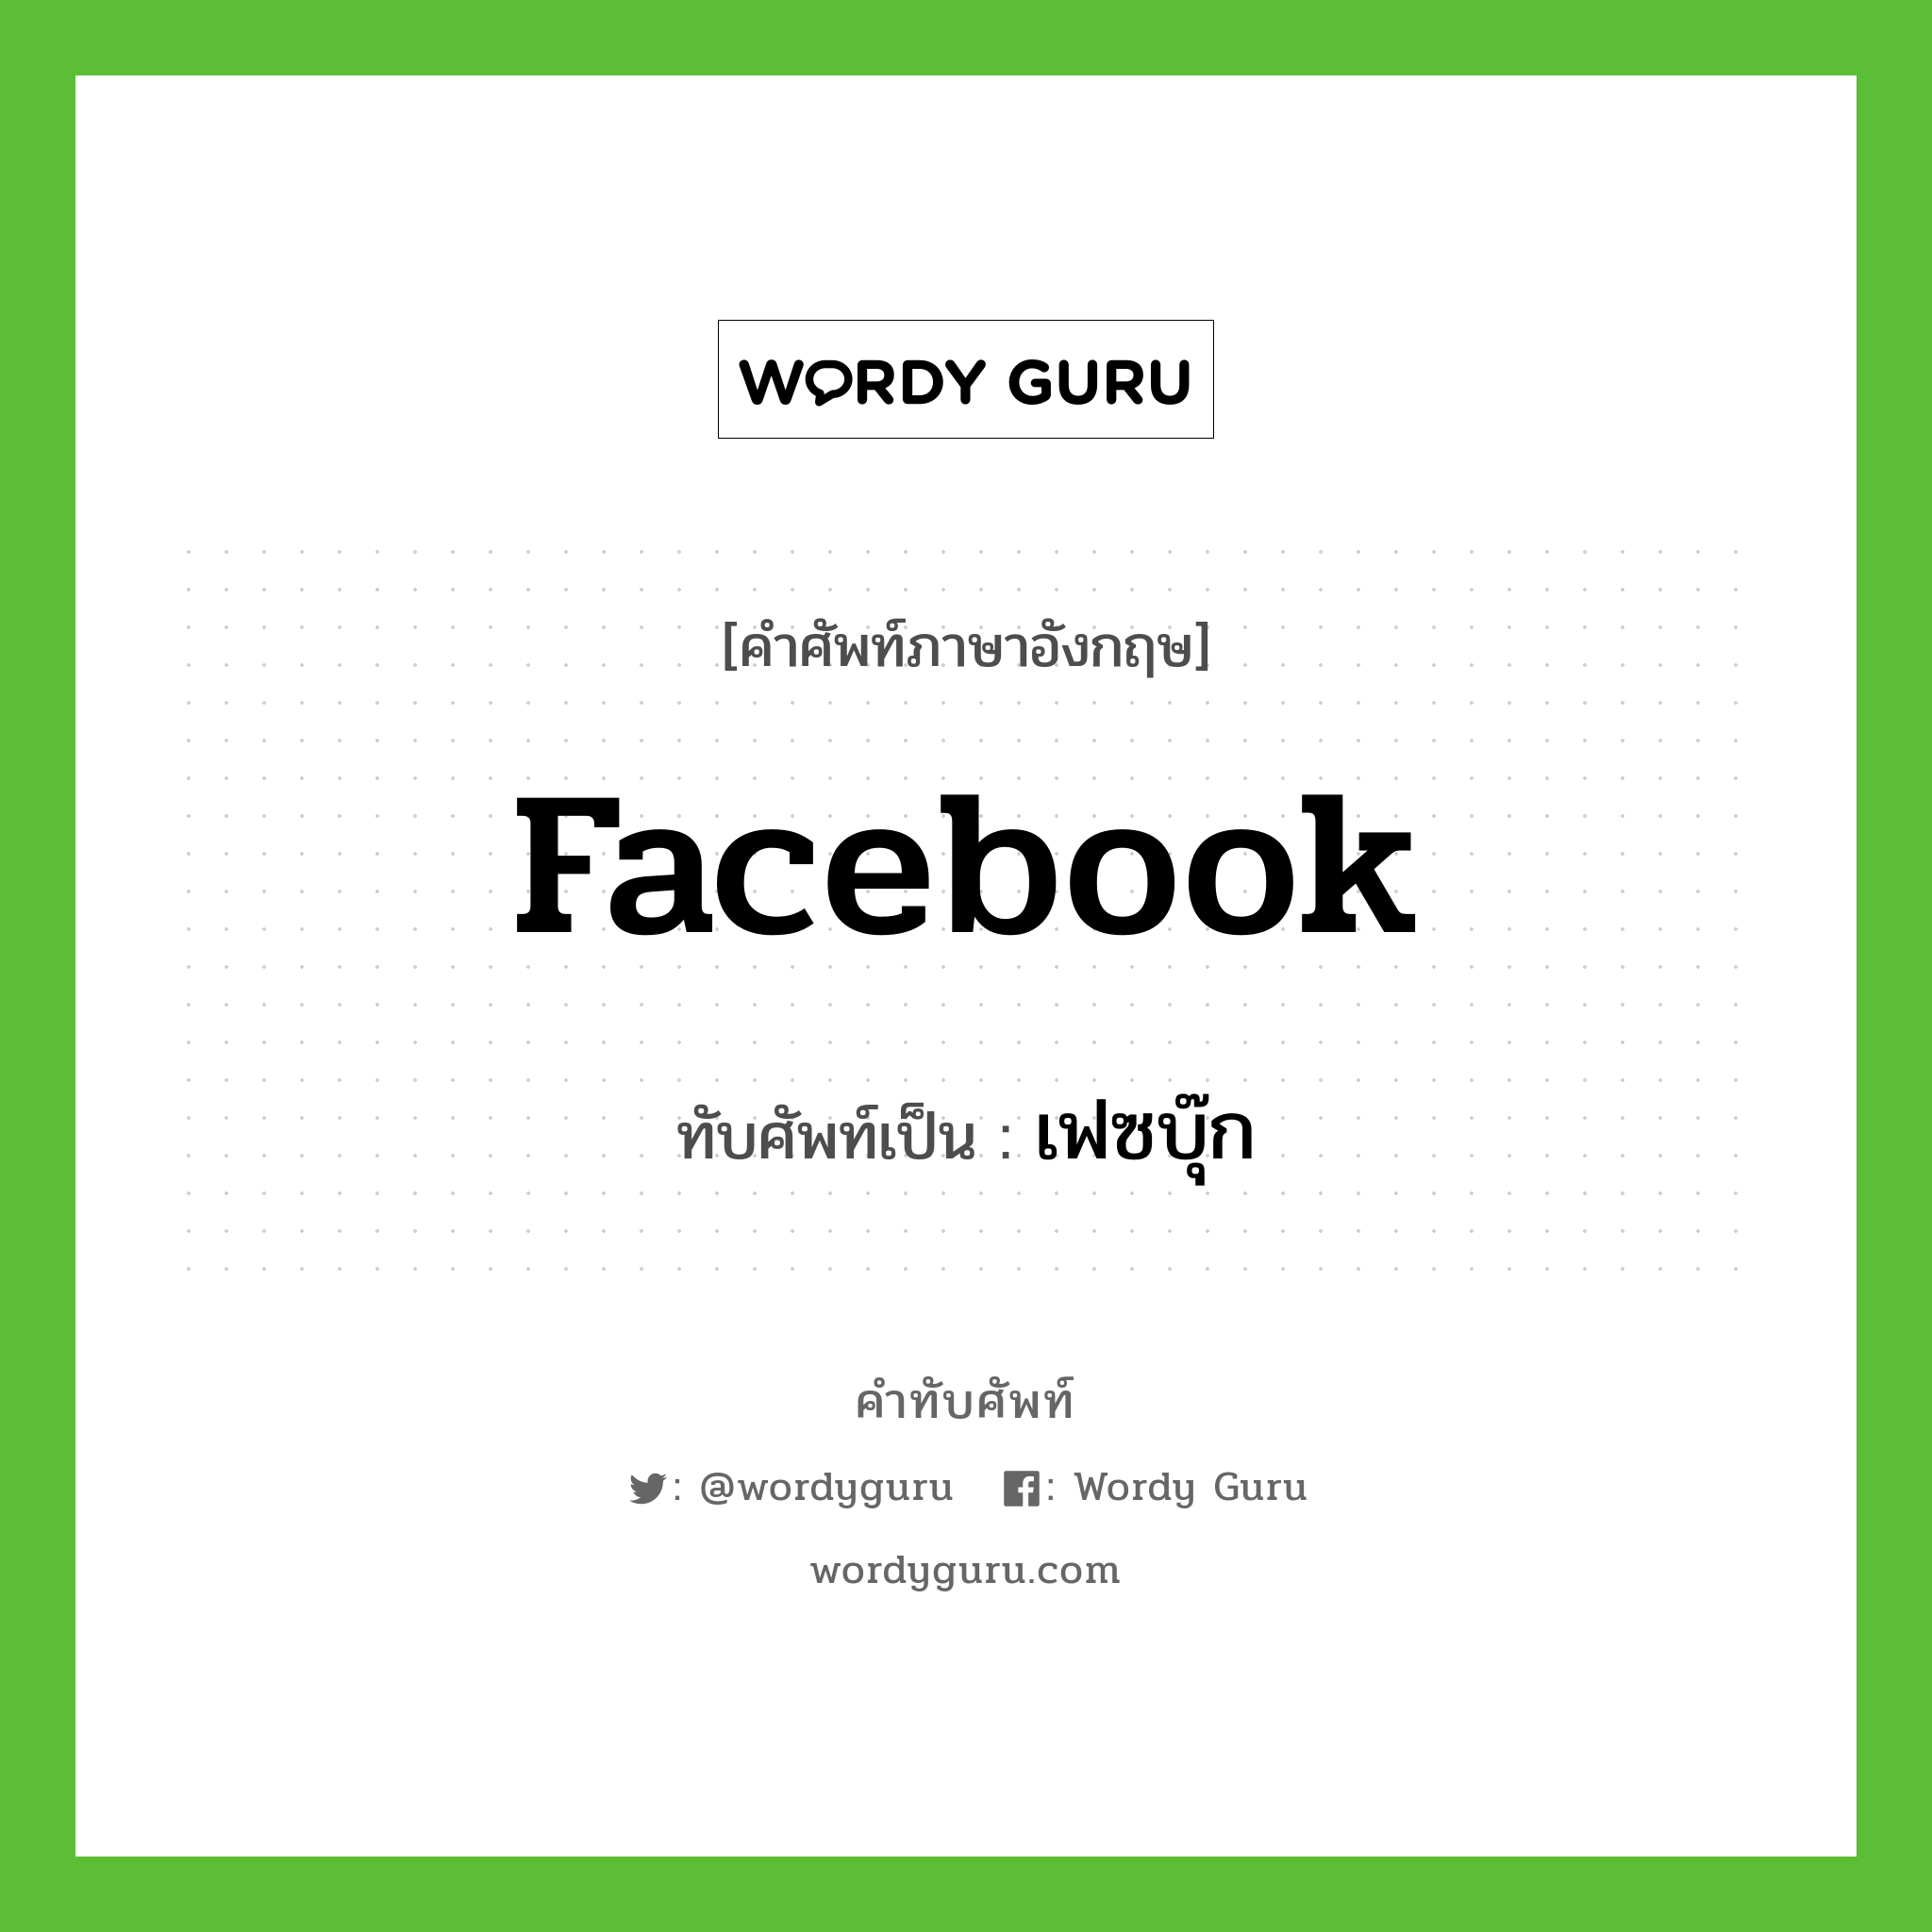 facebook เขียนเป็นคำไทยว่าอะไร?, คำศัพท์ภาษาอังกฤษ facebook ทับศัพท์เป็น เฟซบุ๊ก